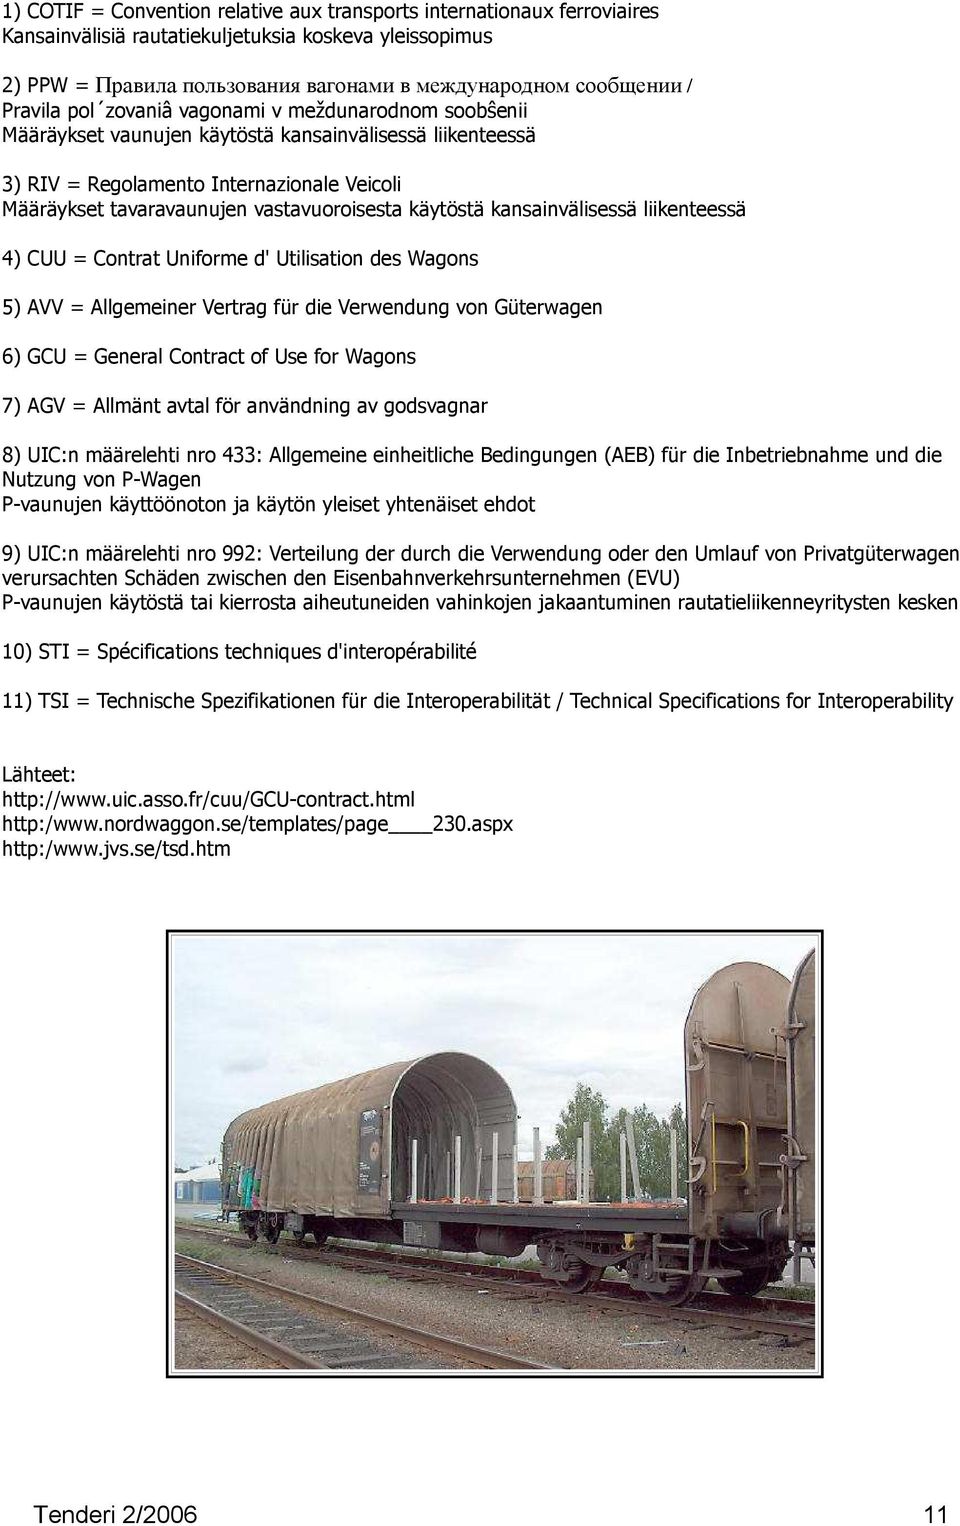 vastavuoroisesta käytöstä kansainvälisessä liikenteessä 4) CUU = Contrat Uniforme d' Utilisation des Wagons 5) AVV = Allgemeiner Vertrag für die Verwendung von Güterwagen 6) GCU = General Contract of